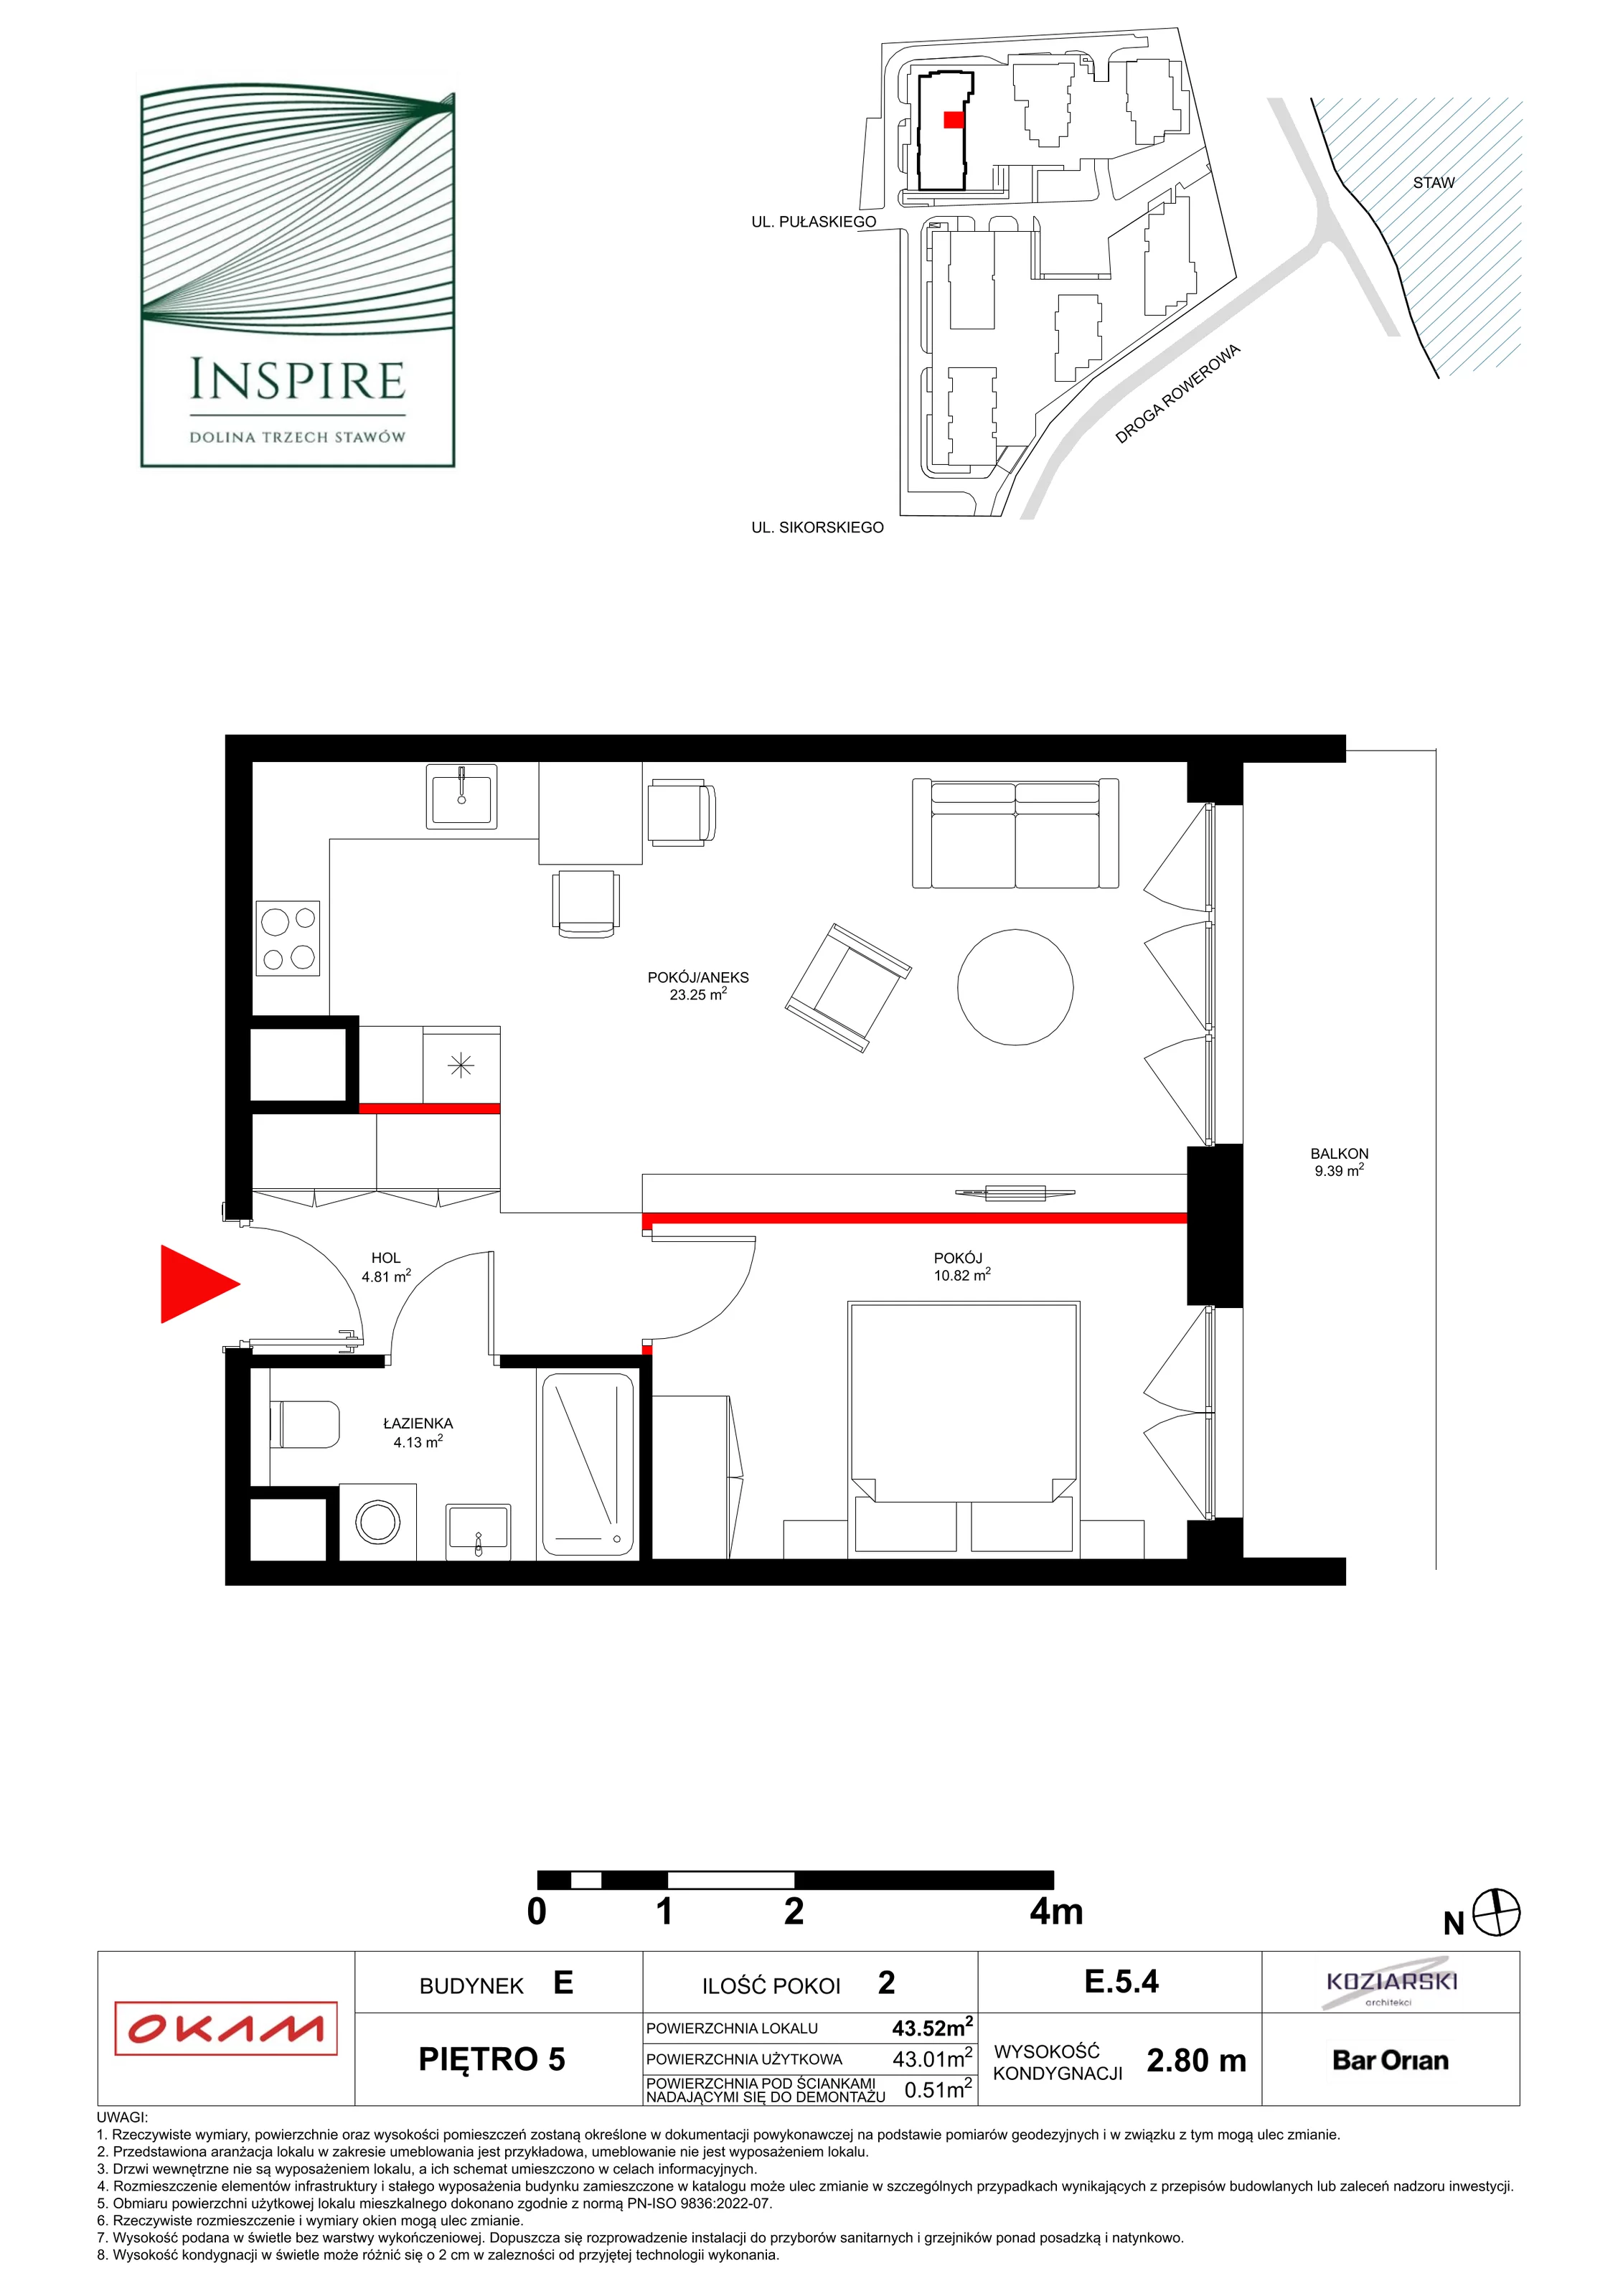 Apartament 43,01 m², piętro 5, oferta nr E.5.4, Inspire, Katowice, Osiedle Paderewskiego-Muchowiec, Dolina Trzech Stawów, ul. gen. Sikorskiego 41